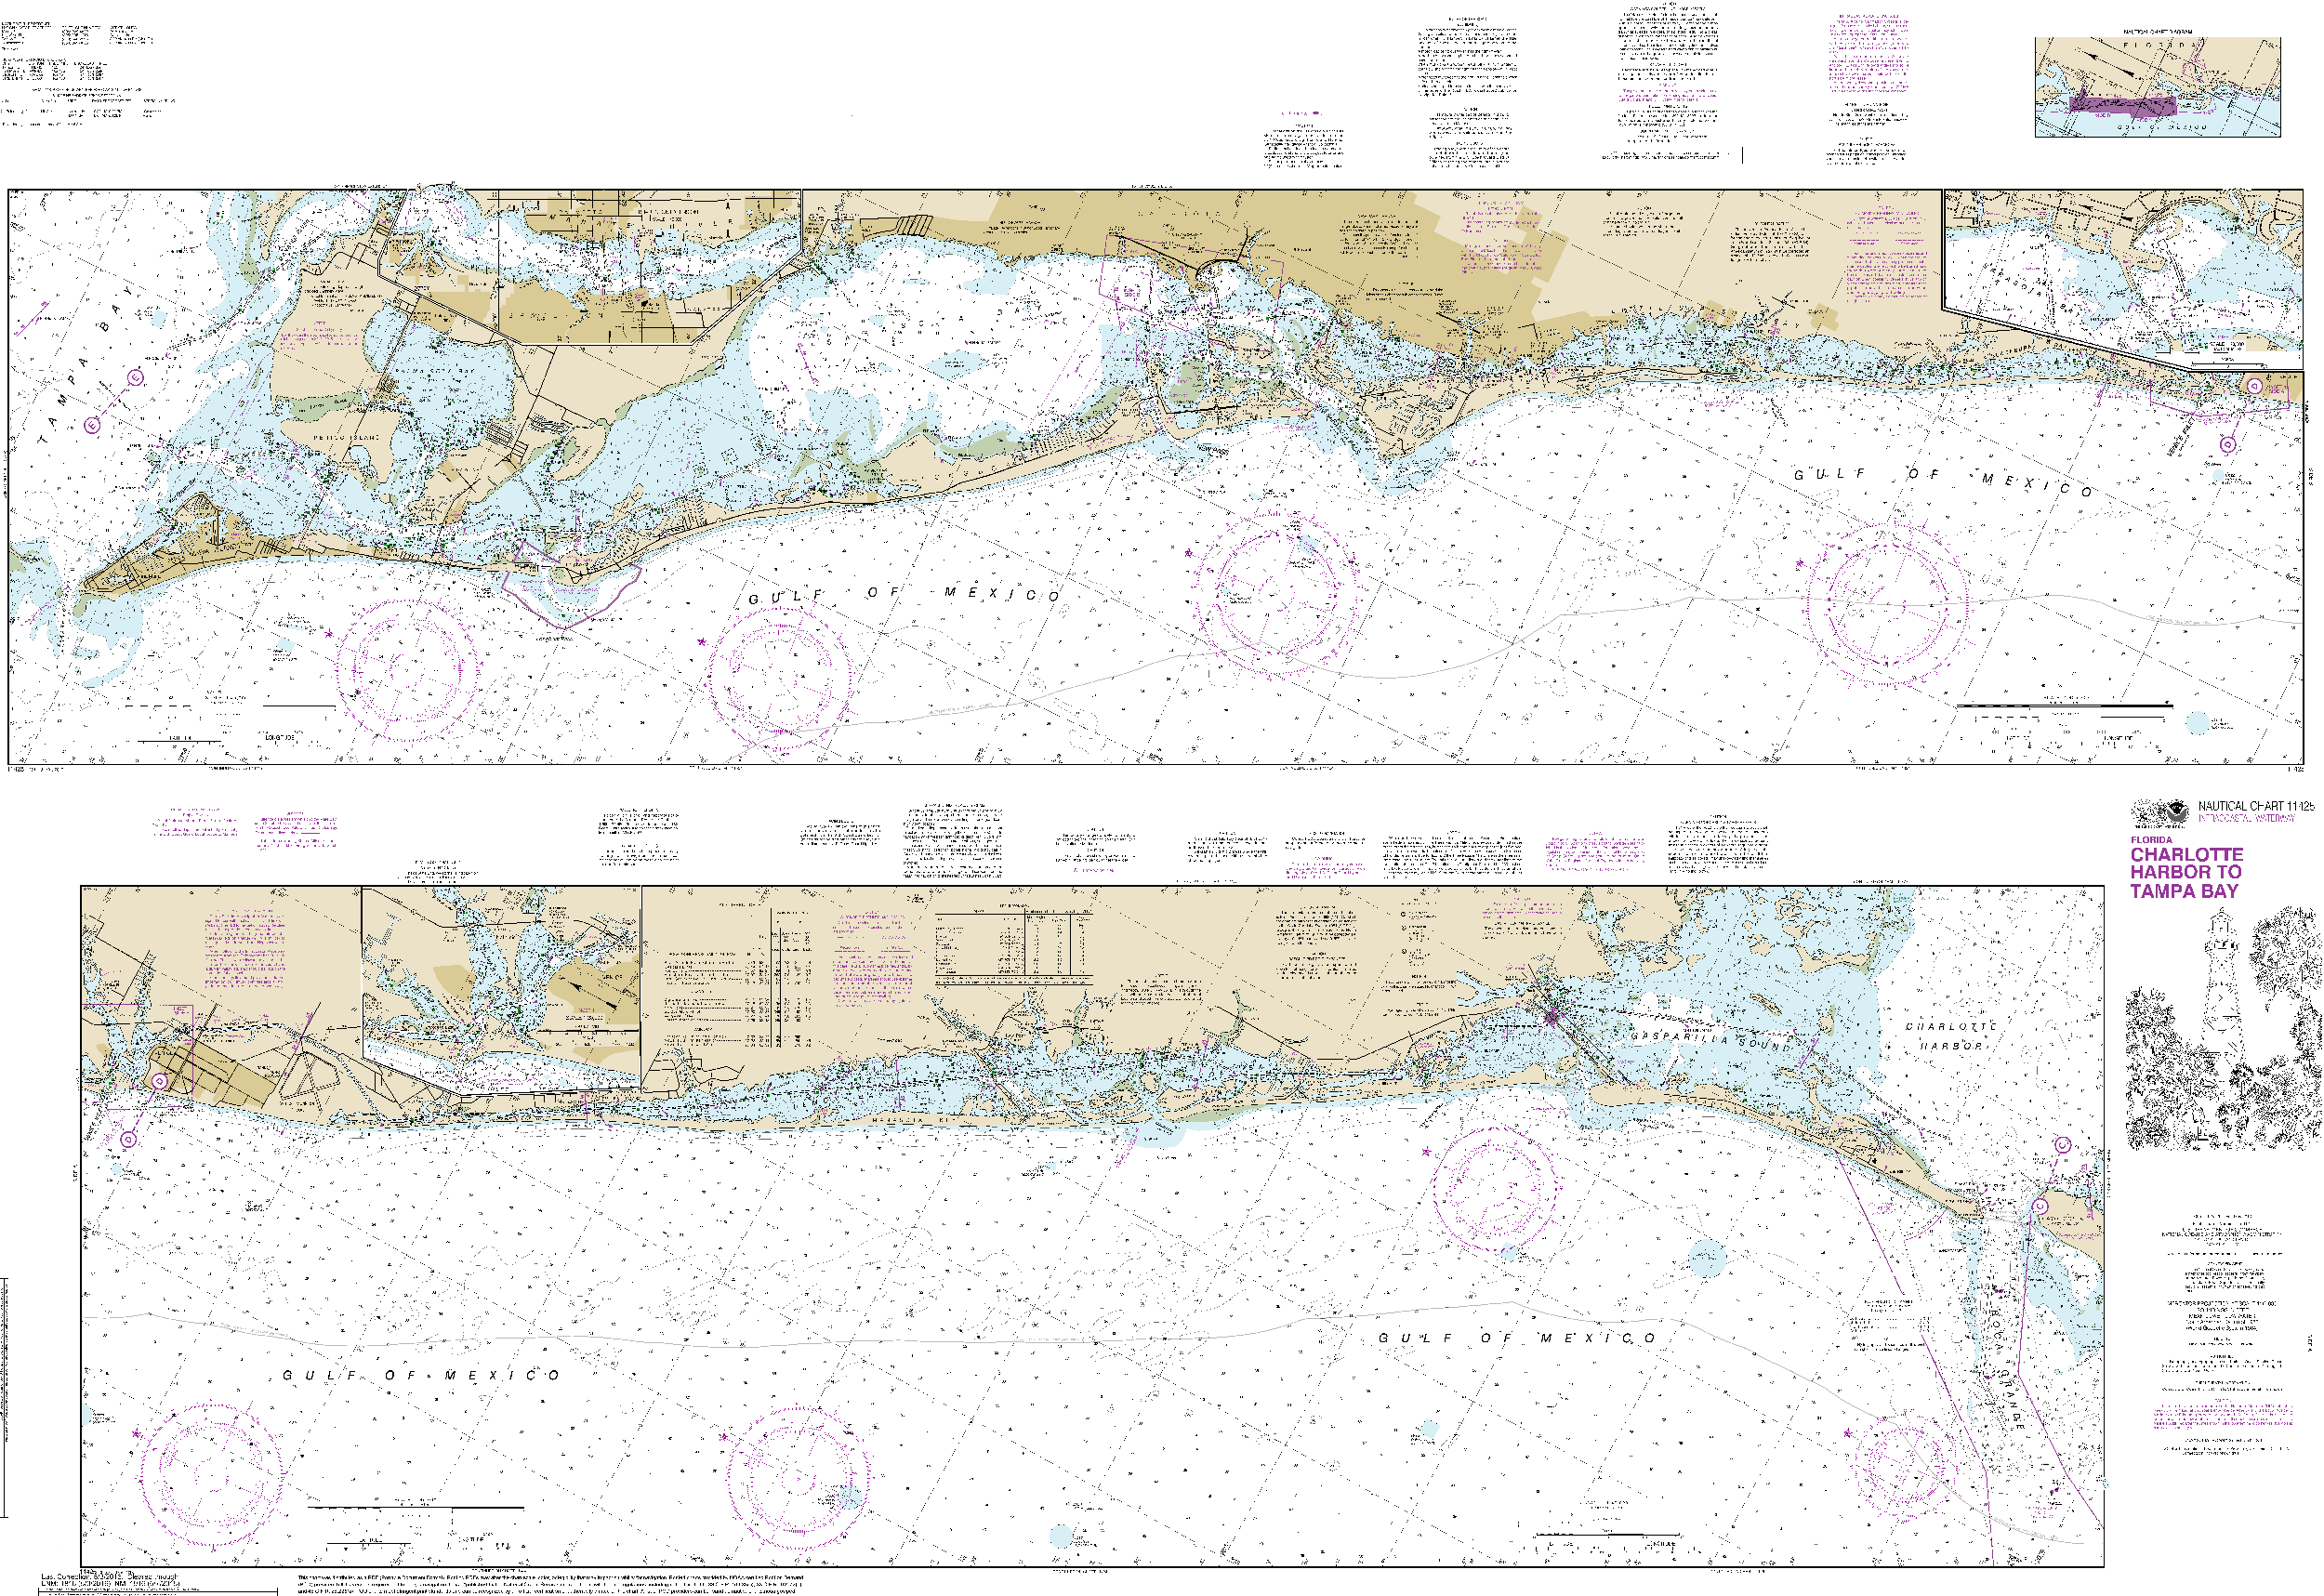 NOAA Nautical Chart 11425: Intracoastal Waterway Charlotte Harbor to Tampa Bay